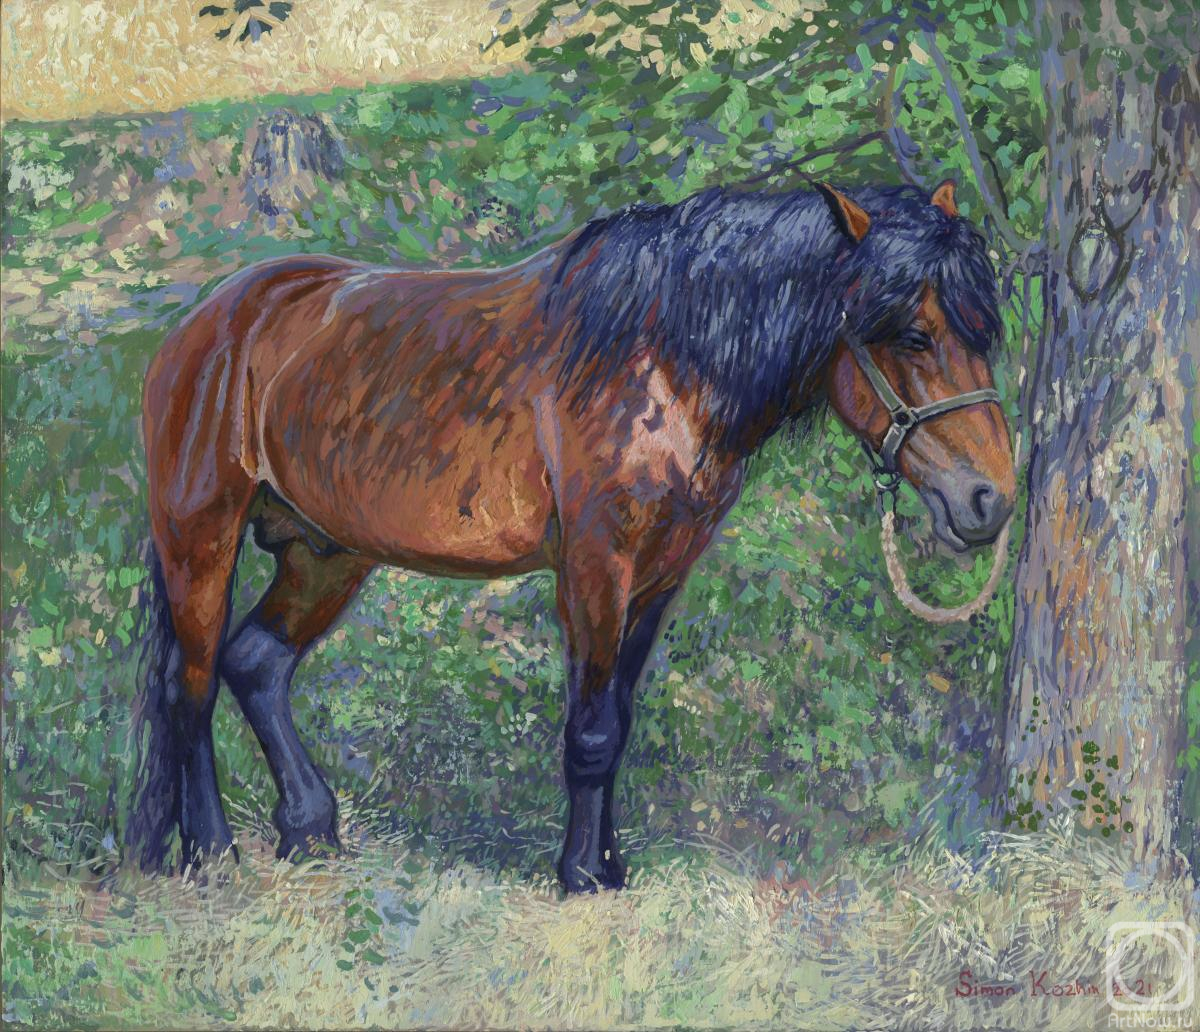 Kozhin Simon. Horse in the shade of trees